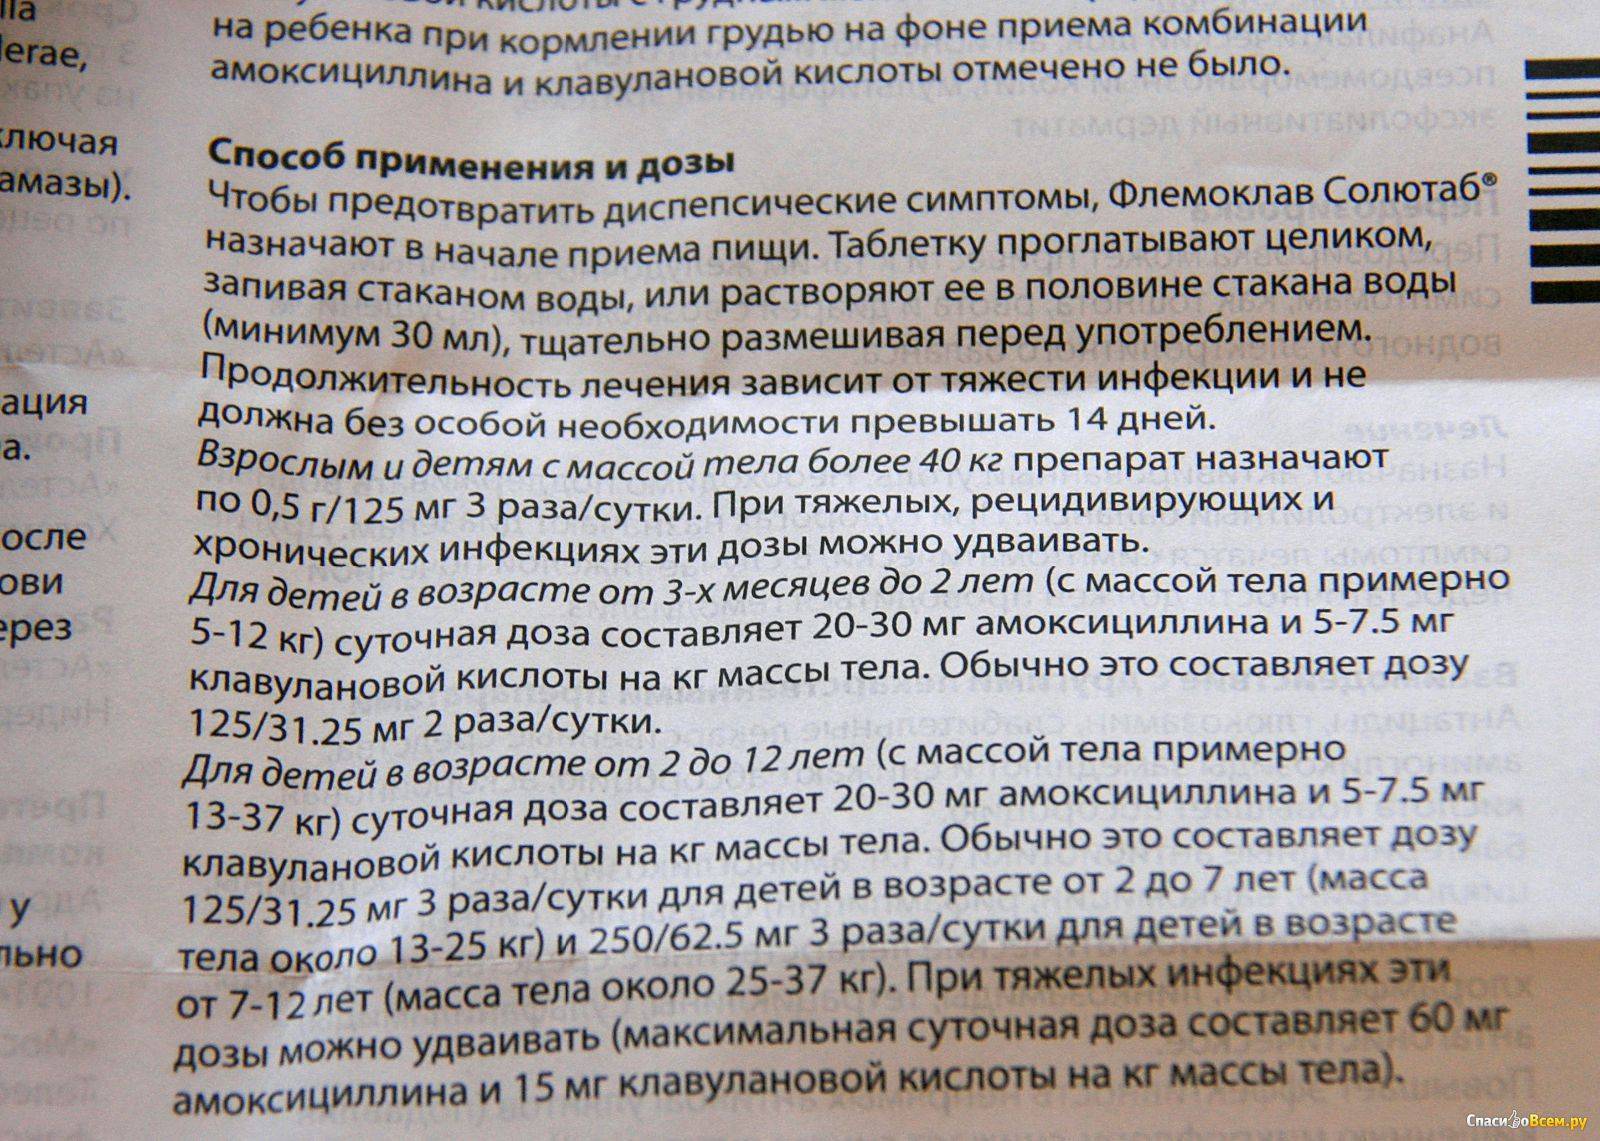 Биопарокс (bioparox) | поиск, резервирование лекарств и препаратов в казахстане +7(727)350-59-11